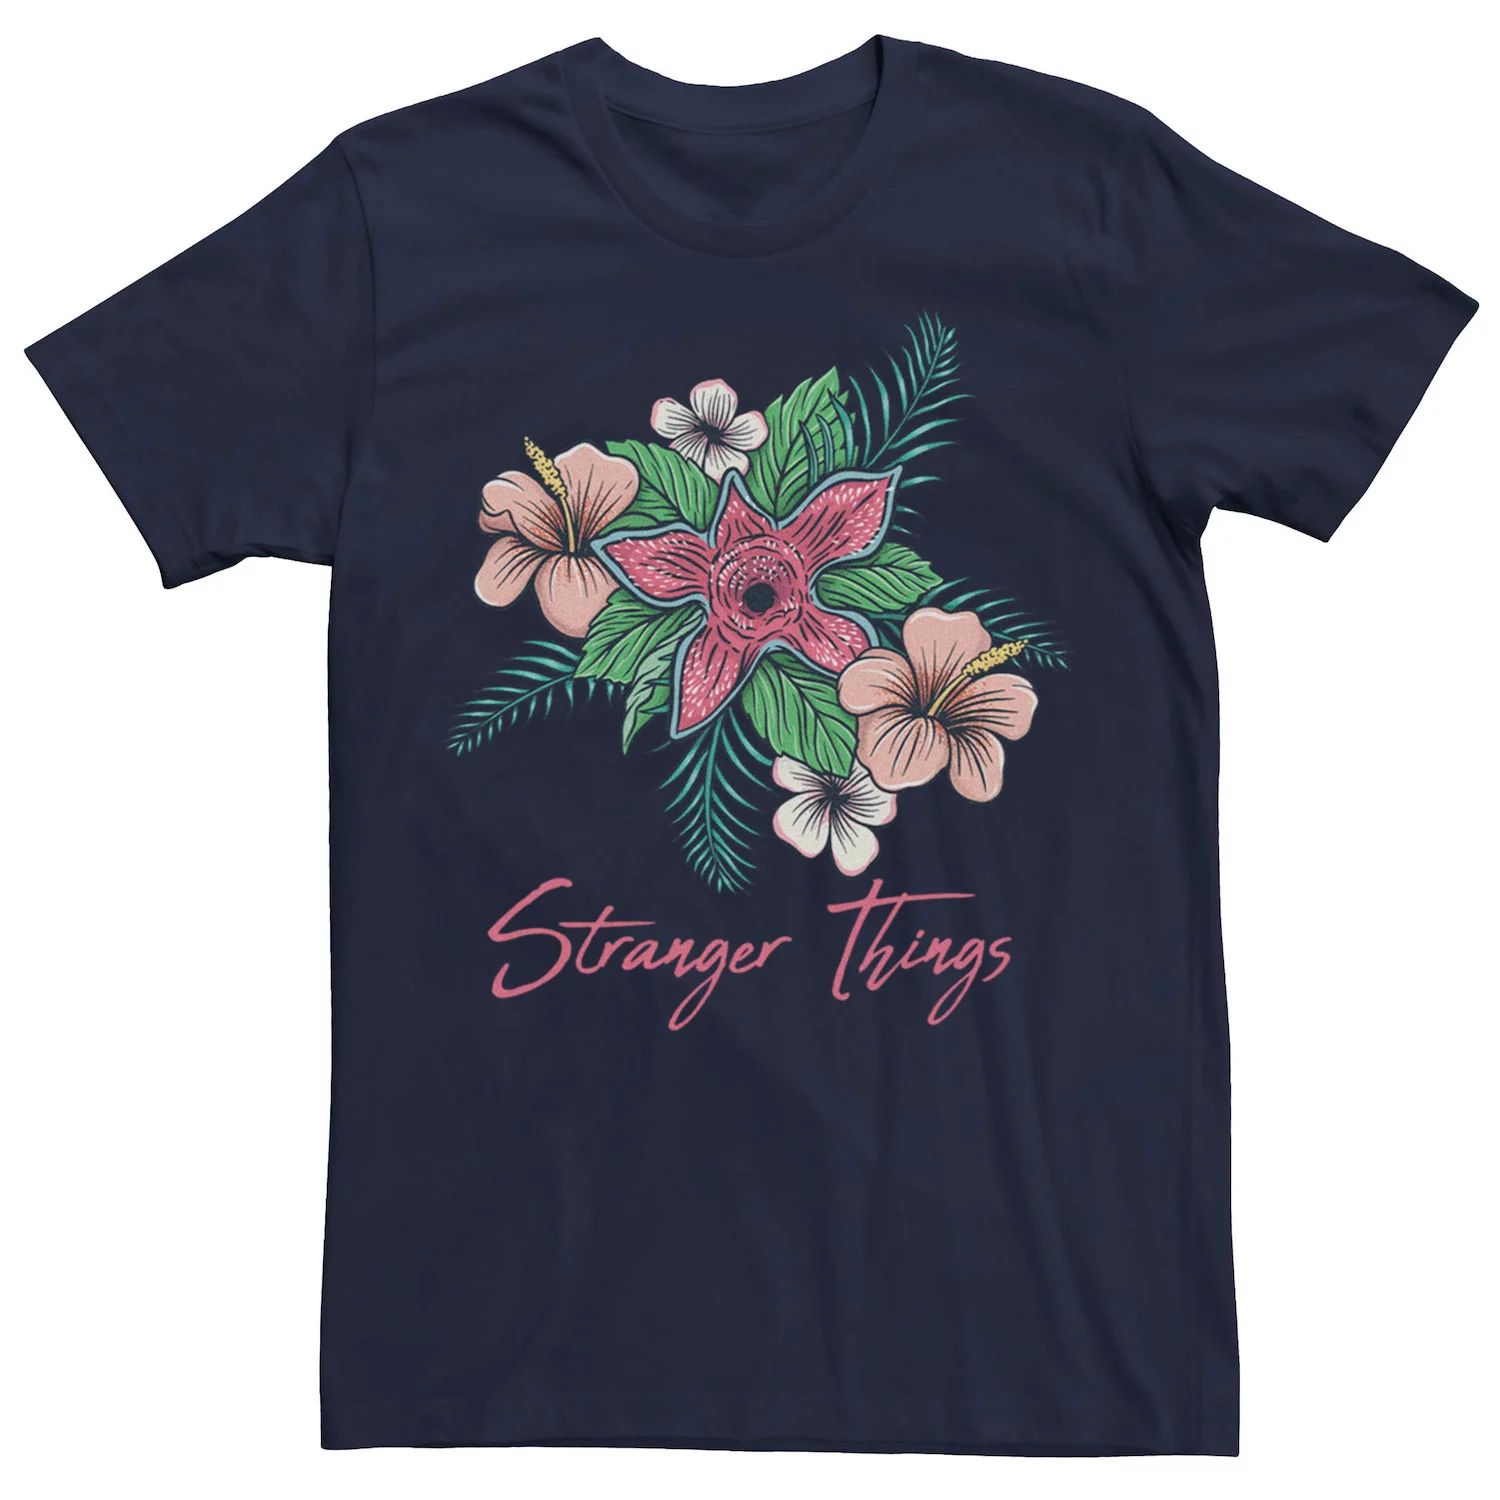 Мужская футболка Netflix Stranger Things с цветочным принтом Демогоргона Licensed Character